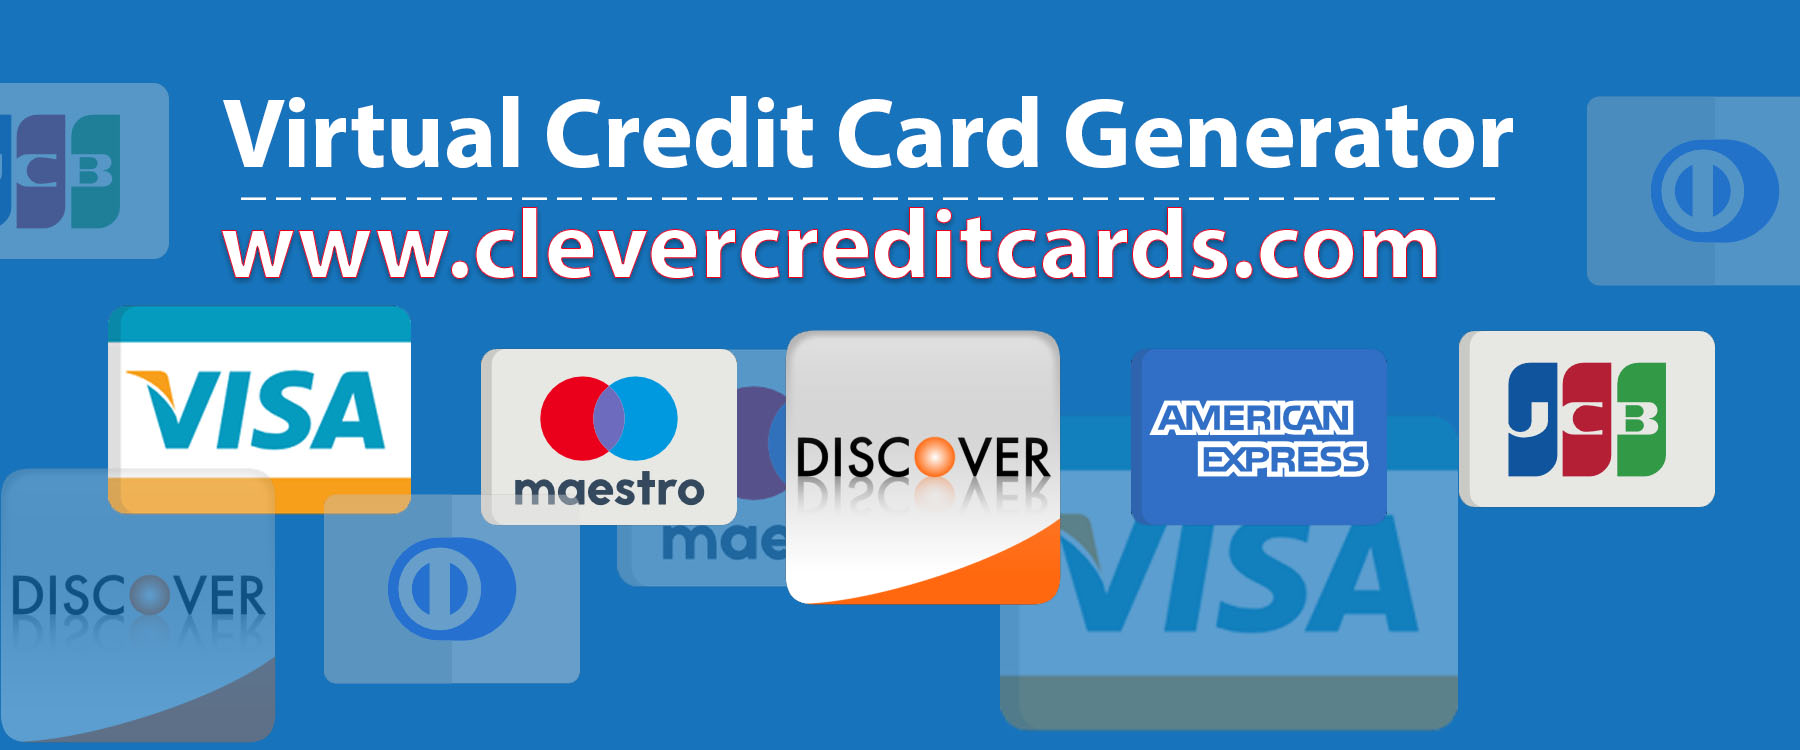 Carduri de credit virtuale valide pentru paypal